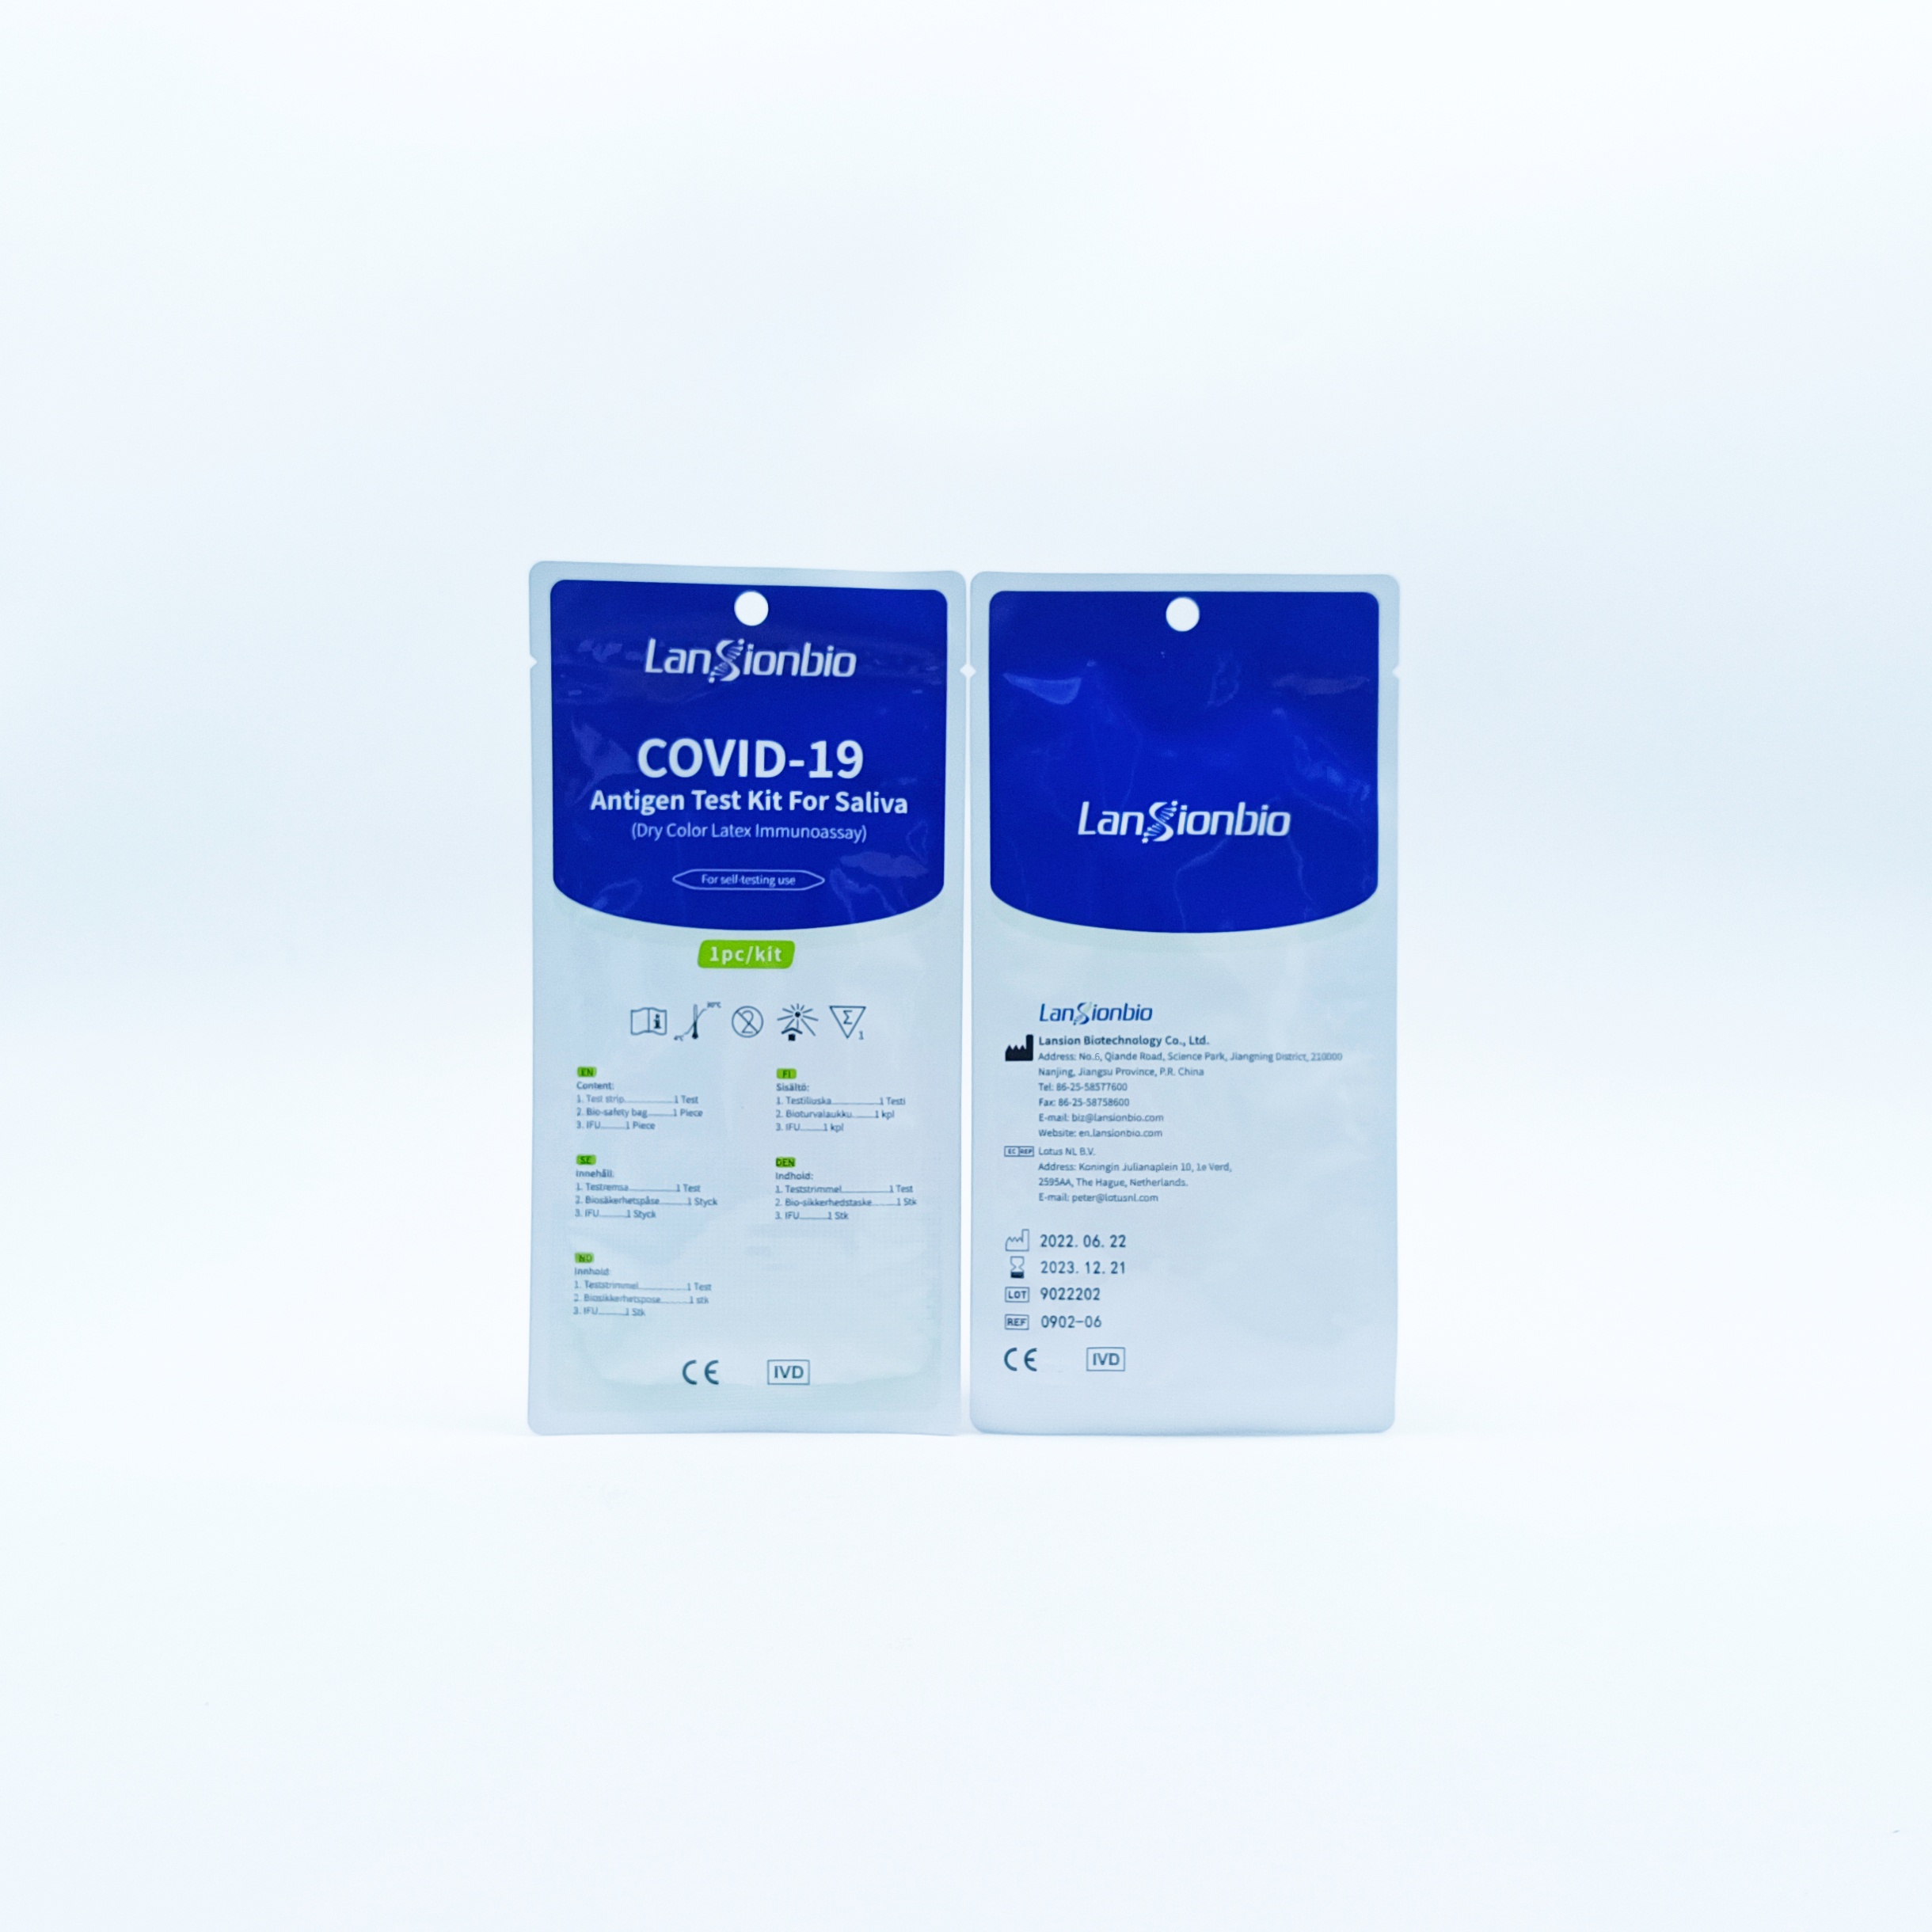 COVID-19 Antigen Test Kit For Saliva (Dry Color Latex Immunoassay)